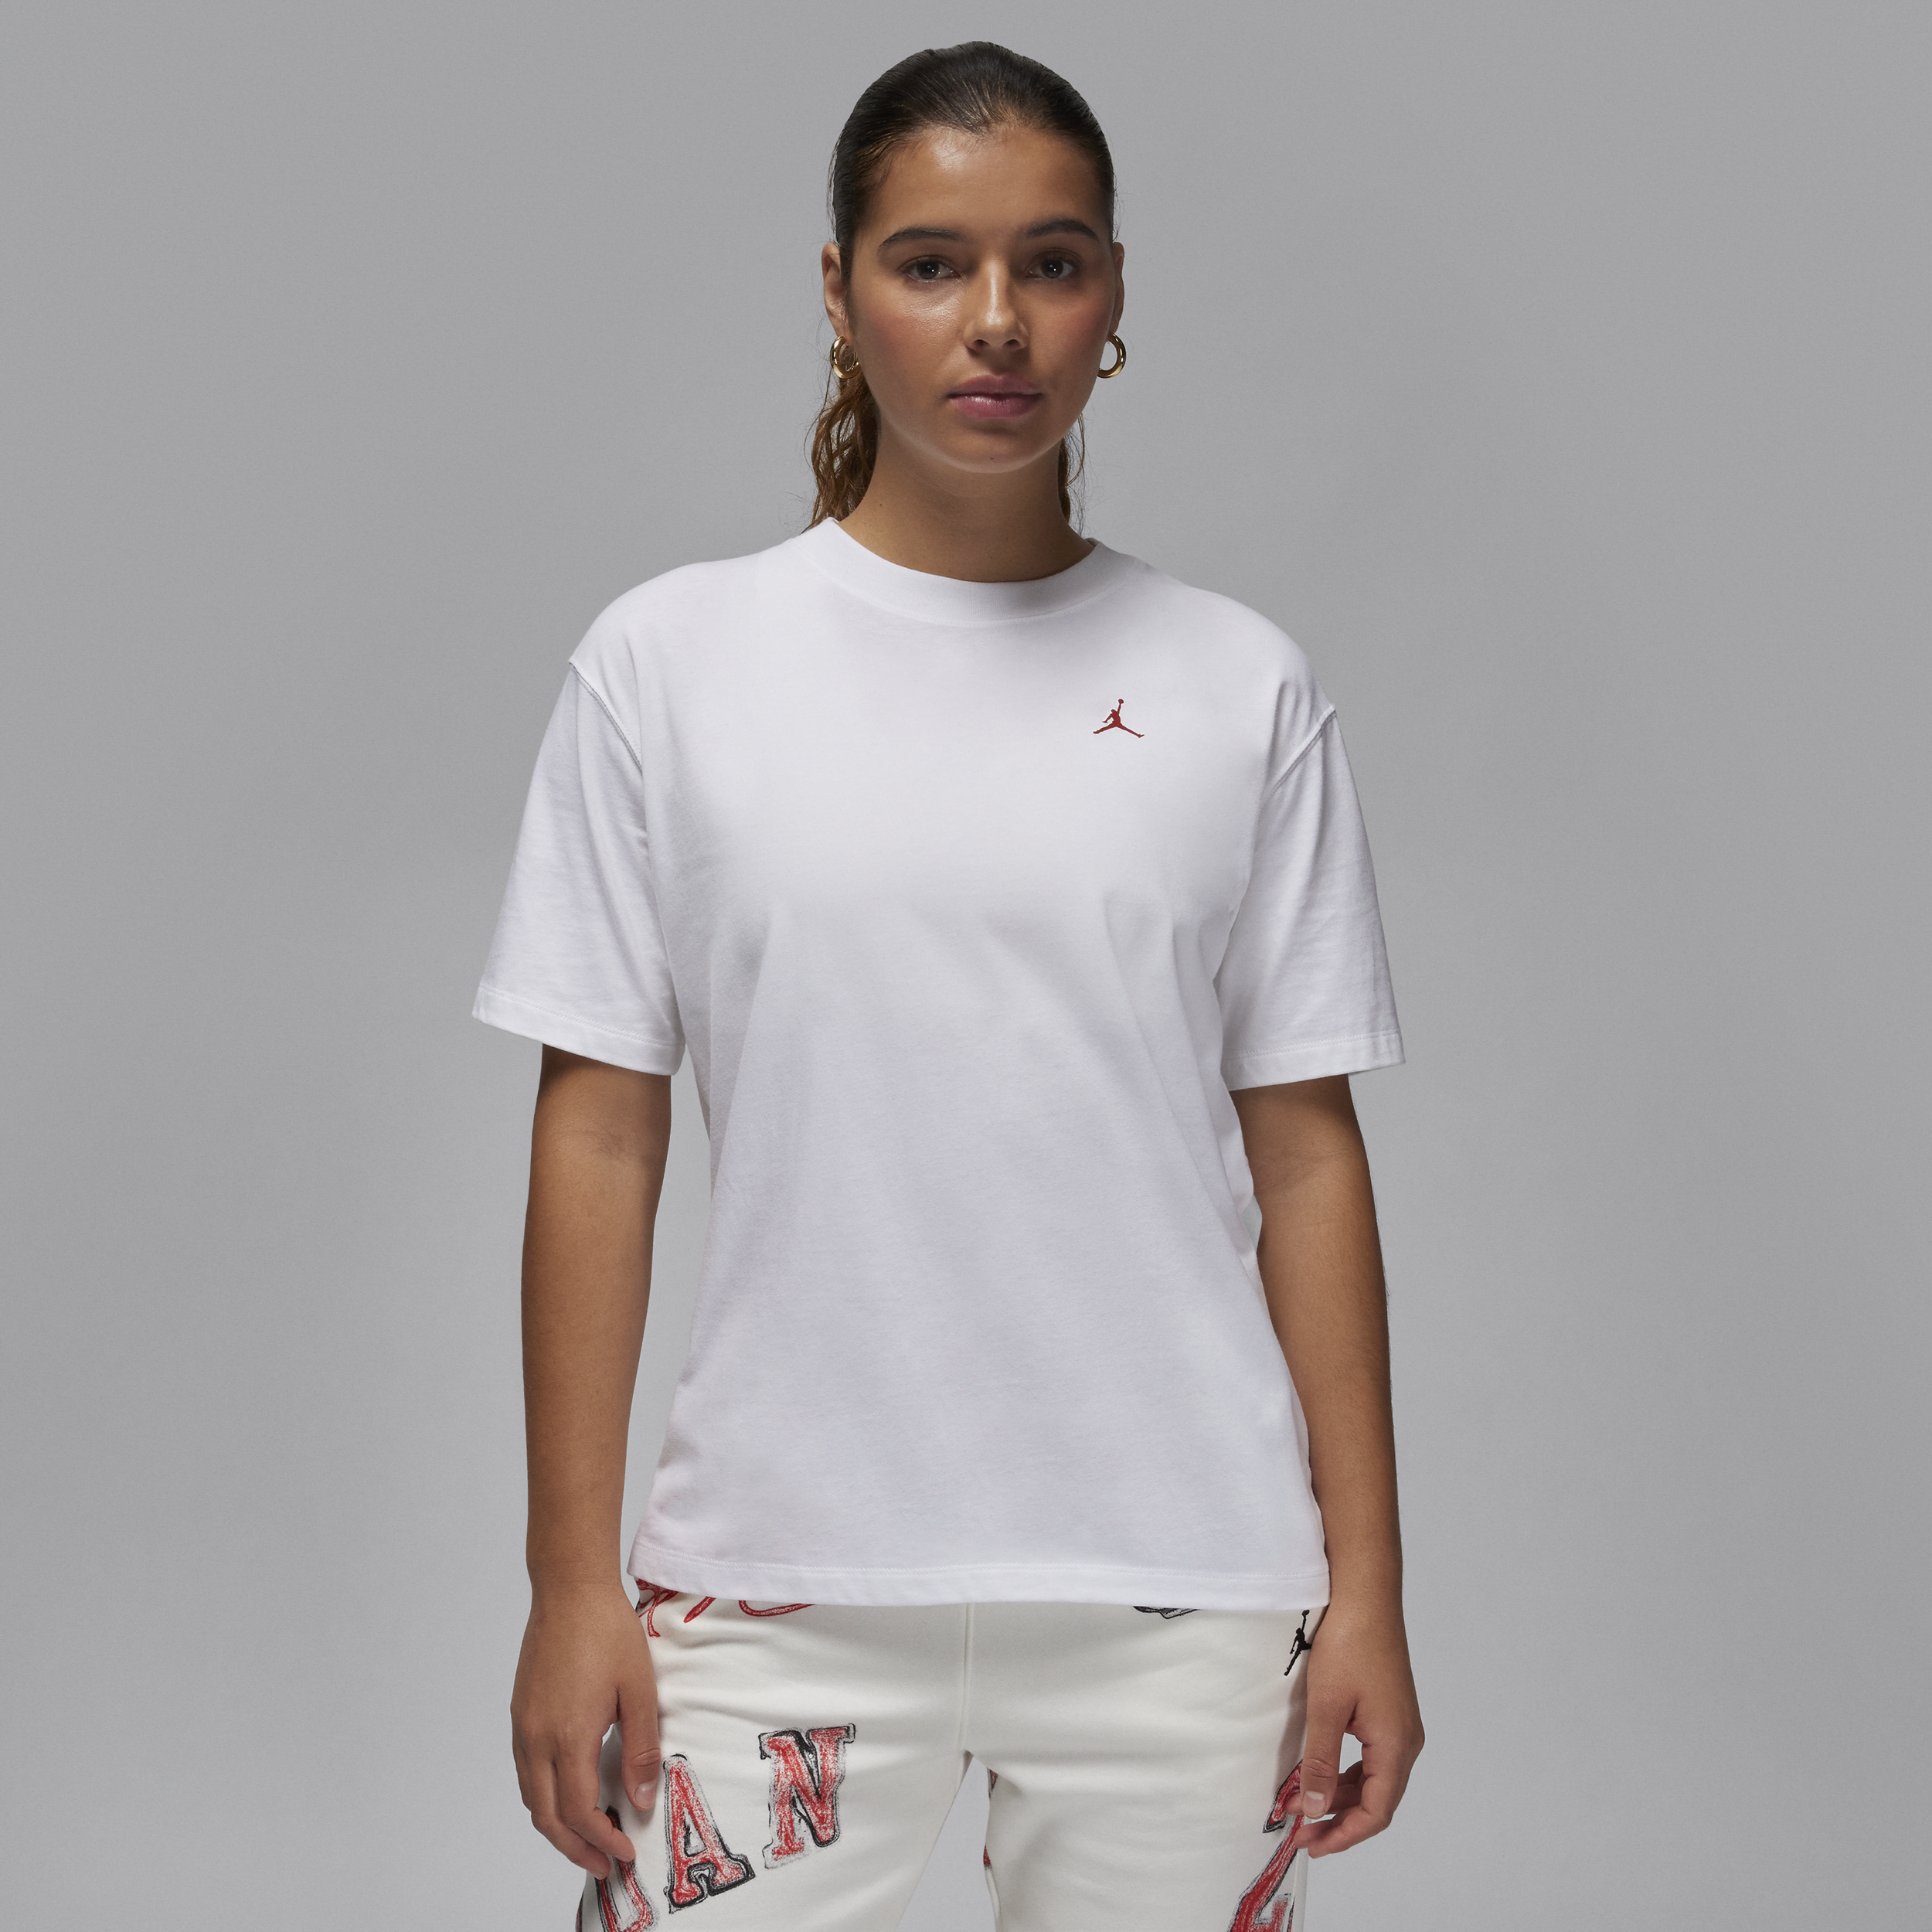 Jordan-T-shirt til kvinder - hvid